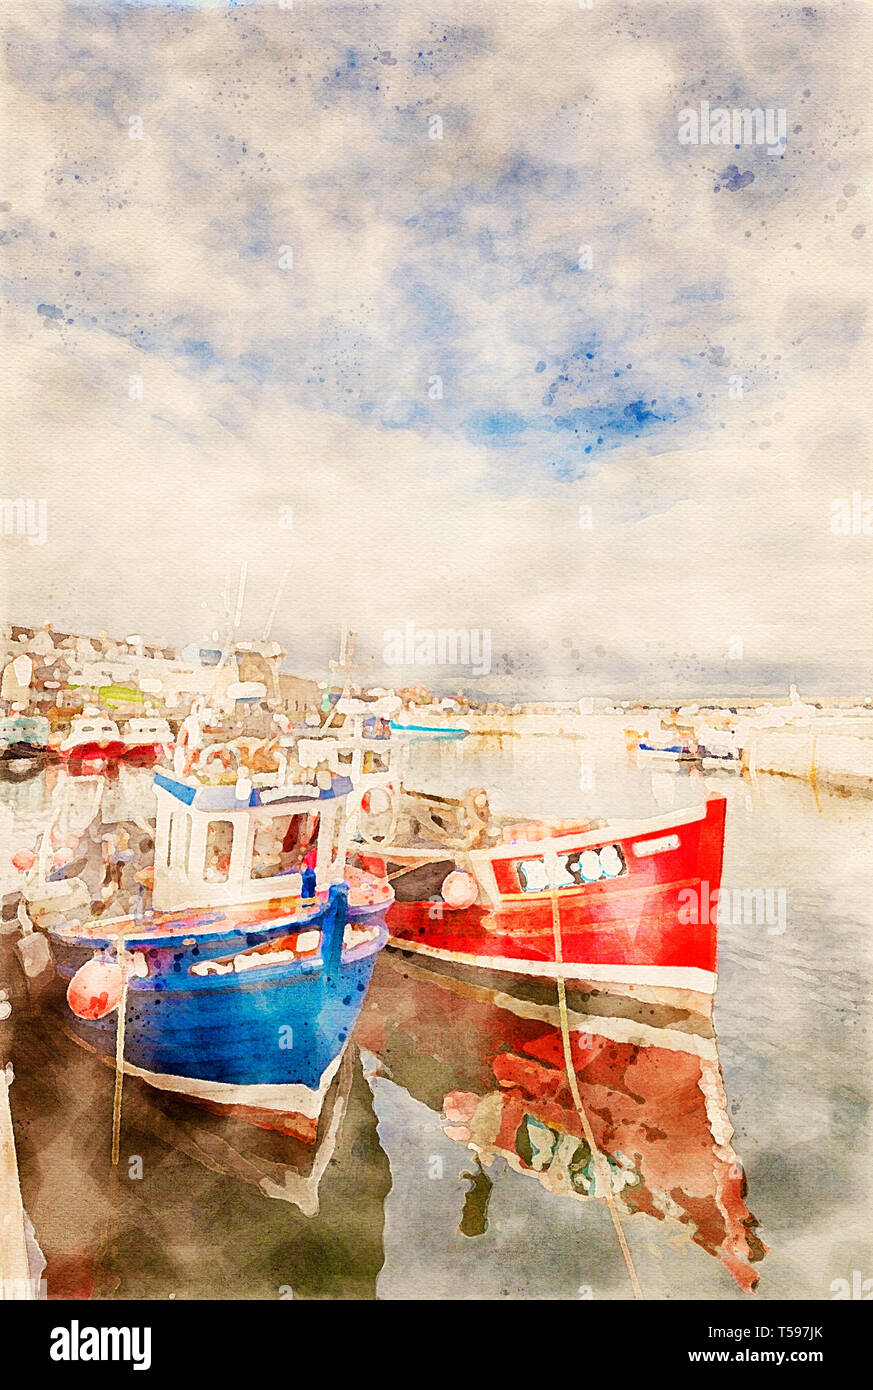 Effet aquarelle à partir d'une photo de Seahouses Harbour sur la côte de Northumberland Région d'une beauté naturelle, England, UK Banque D'Images